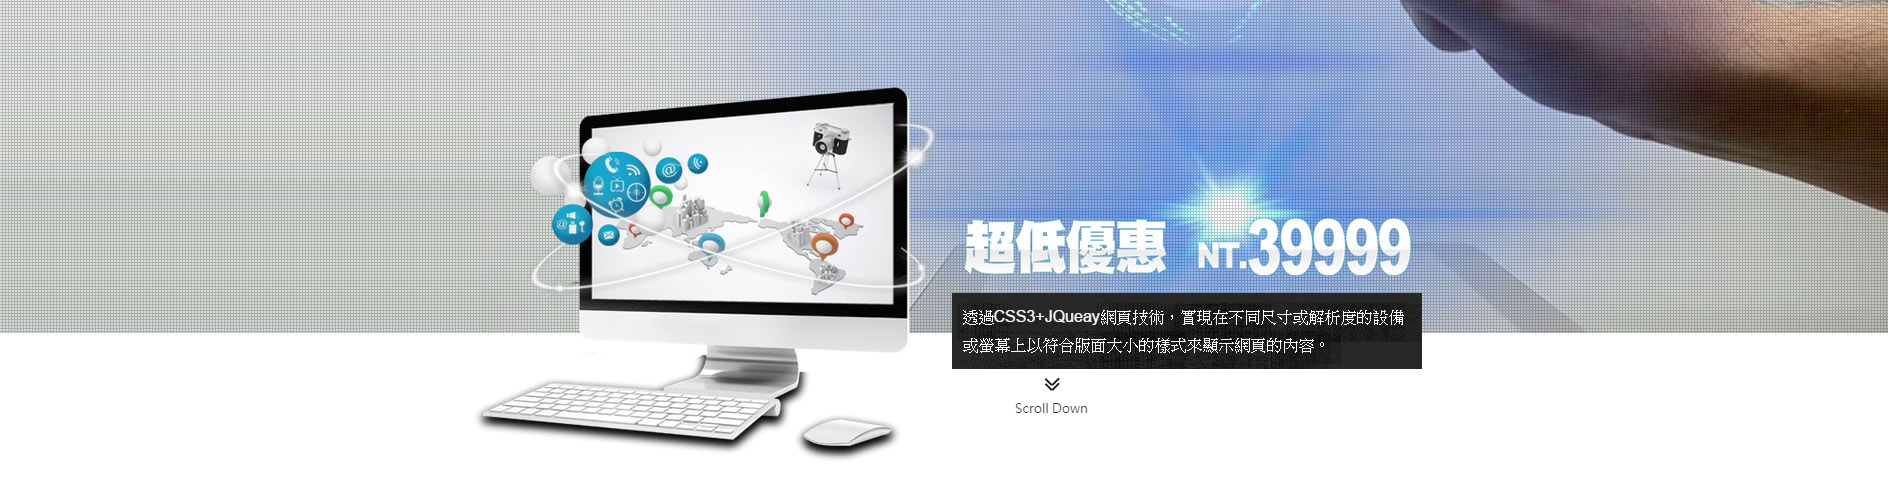 網頁設計超值特惠方案,台南網頁設計免費專案,關鍵字優惠2015